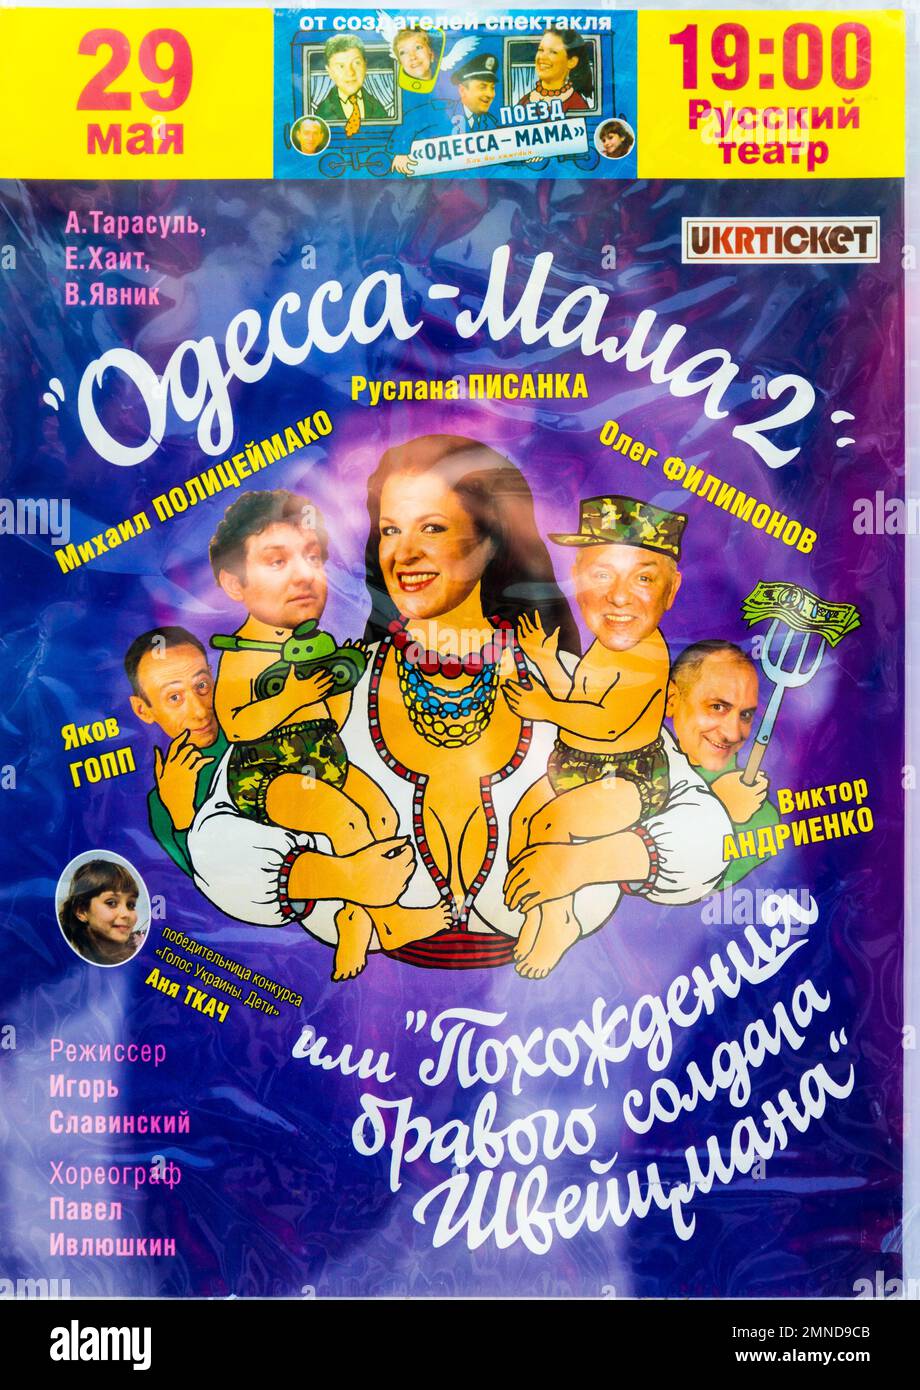 ODESSA, UKRAINE - APR 28, 2019: Affiche publicitaire à Odessa, Ukraine Banque D'Images